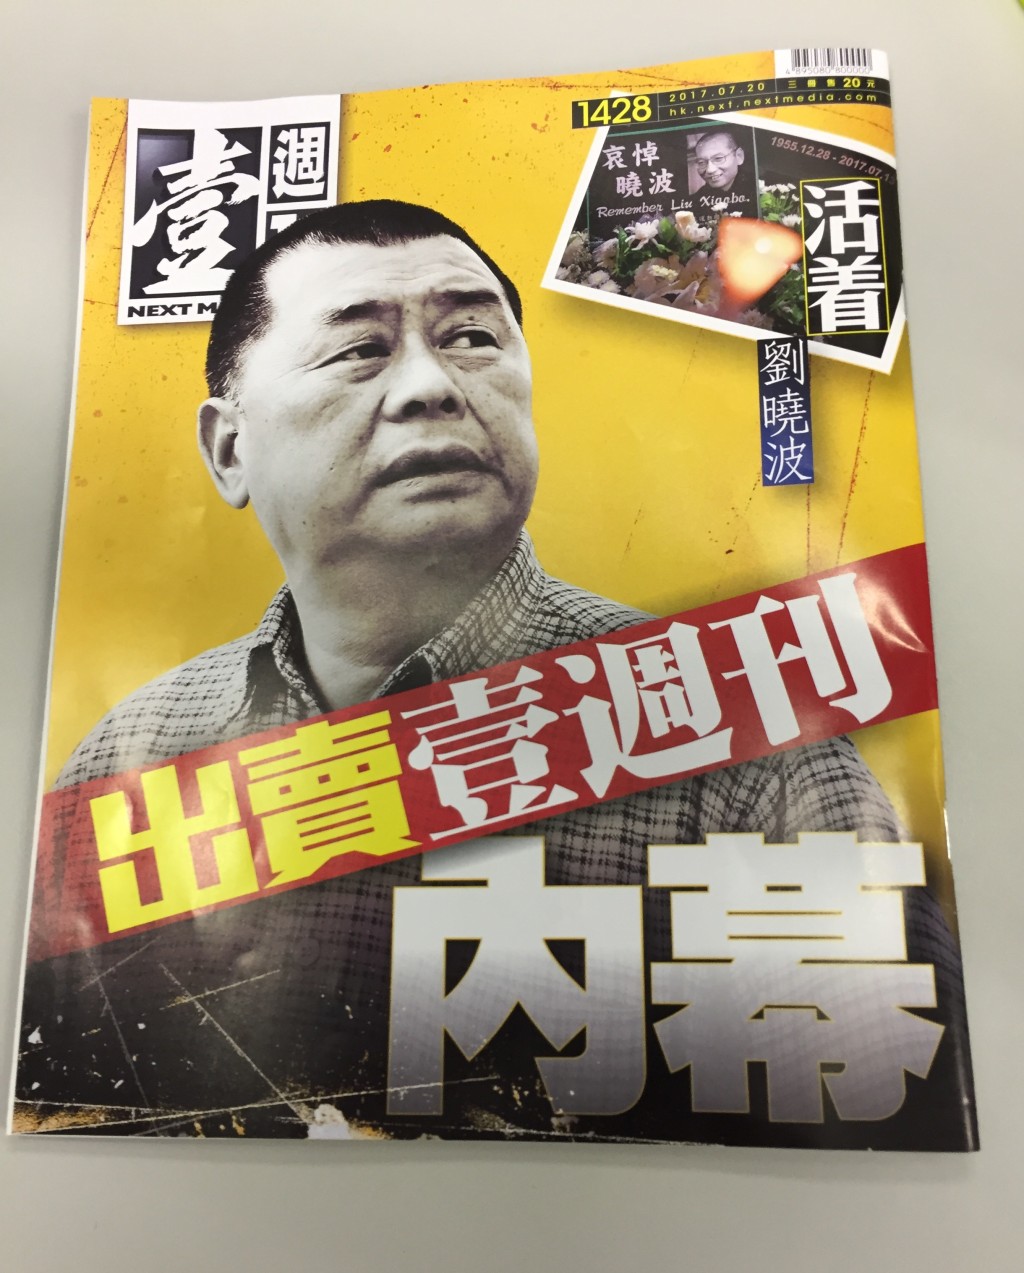 2017年壹传媒计划出售《壹周刊》予商人黄浩，杂志亦以此为封面故事。